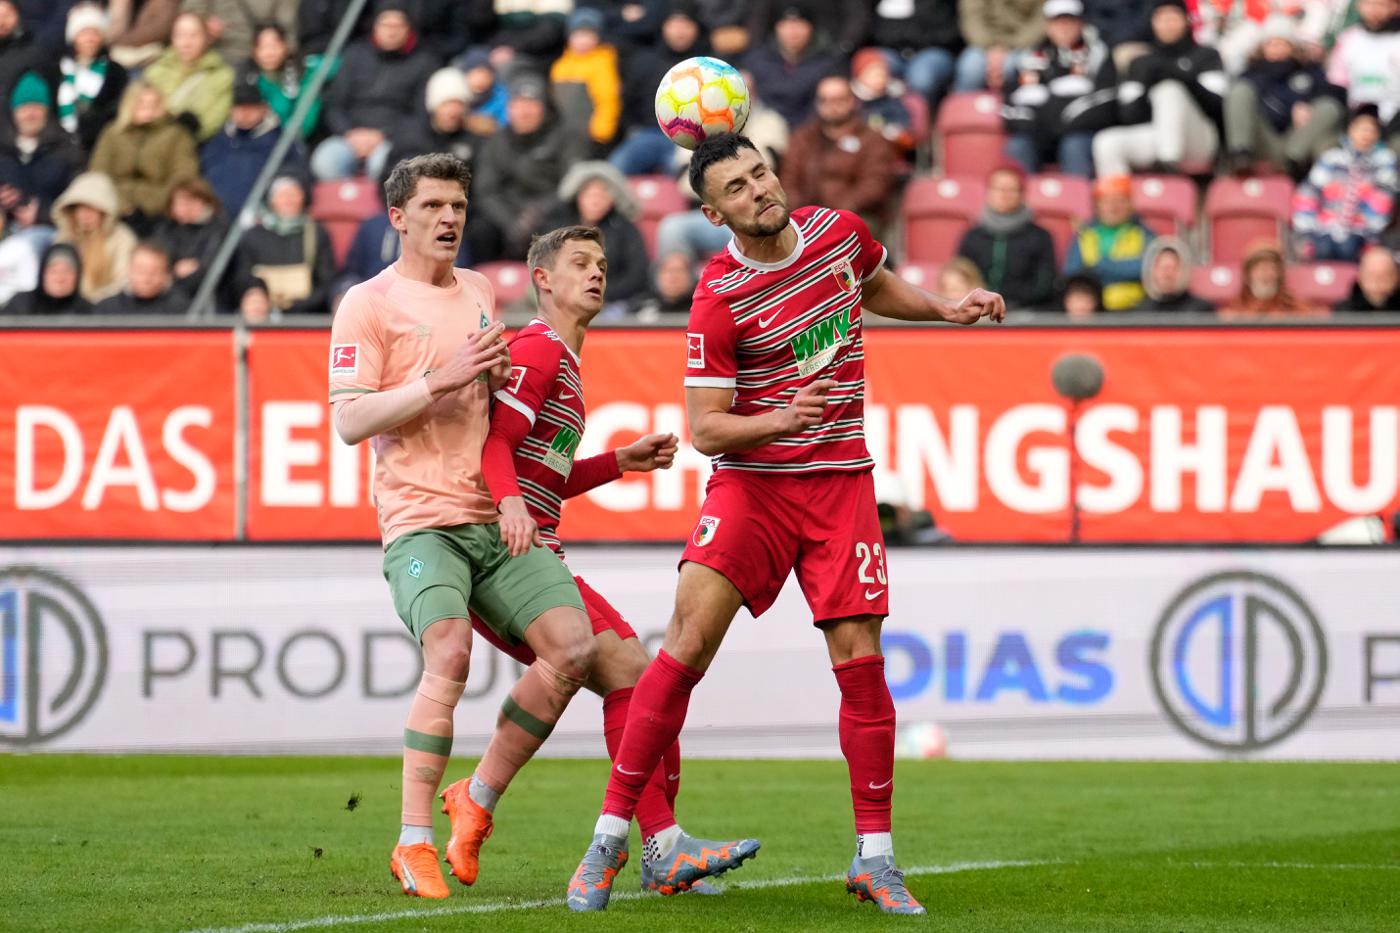 Augsburg v Werder - 2-1. Mistrzostwo Niemiec, runda 23. Przegląd meczów, statystyki.